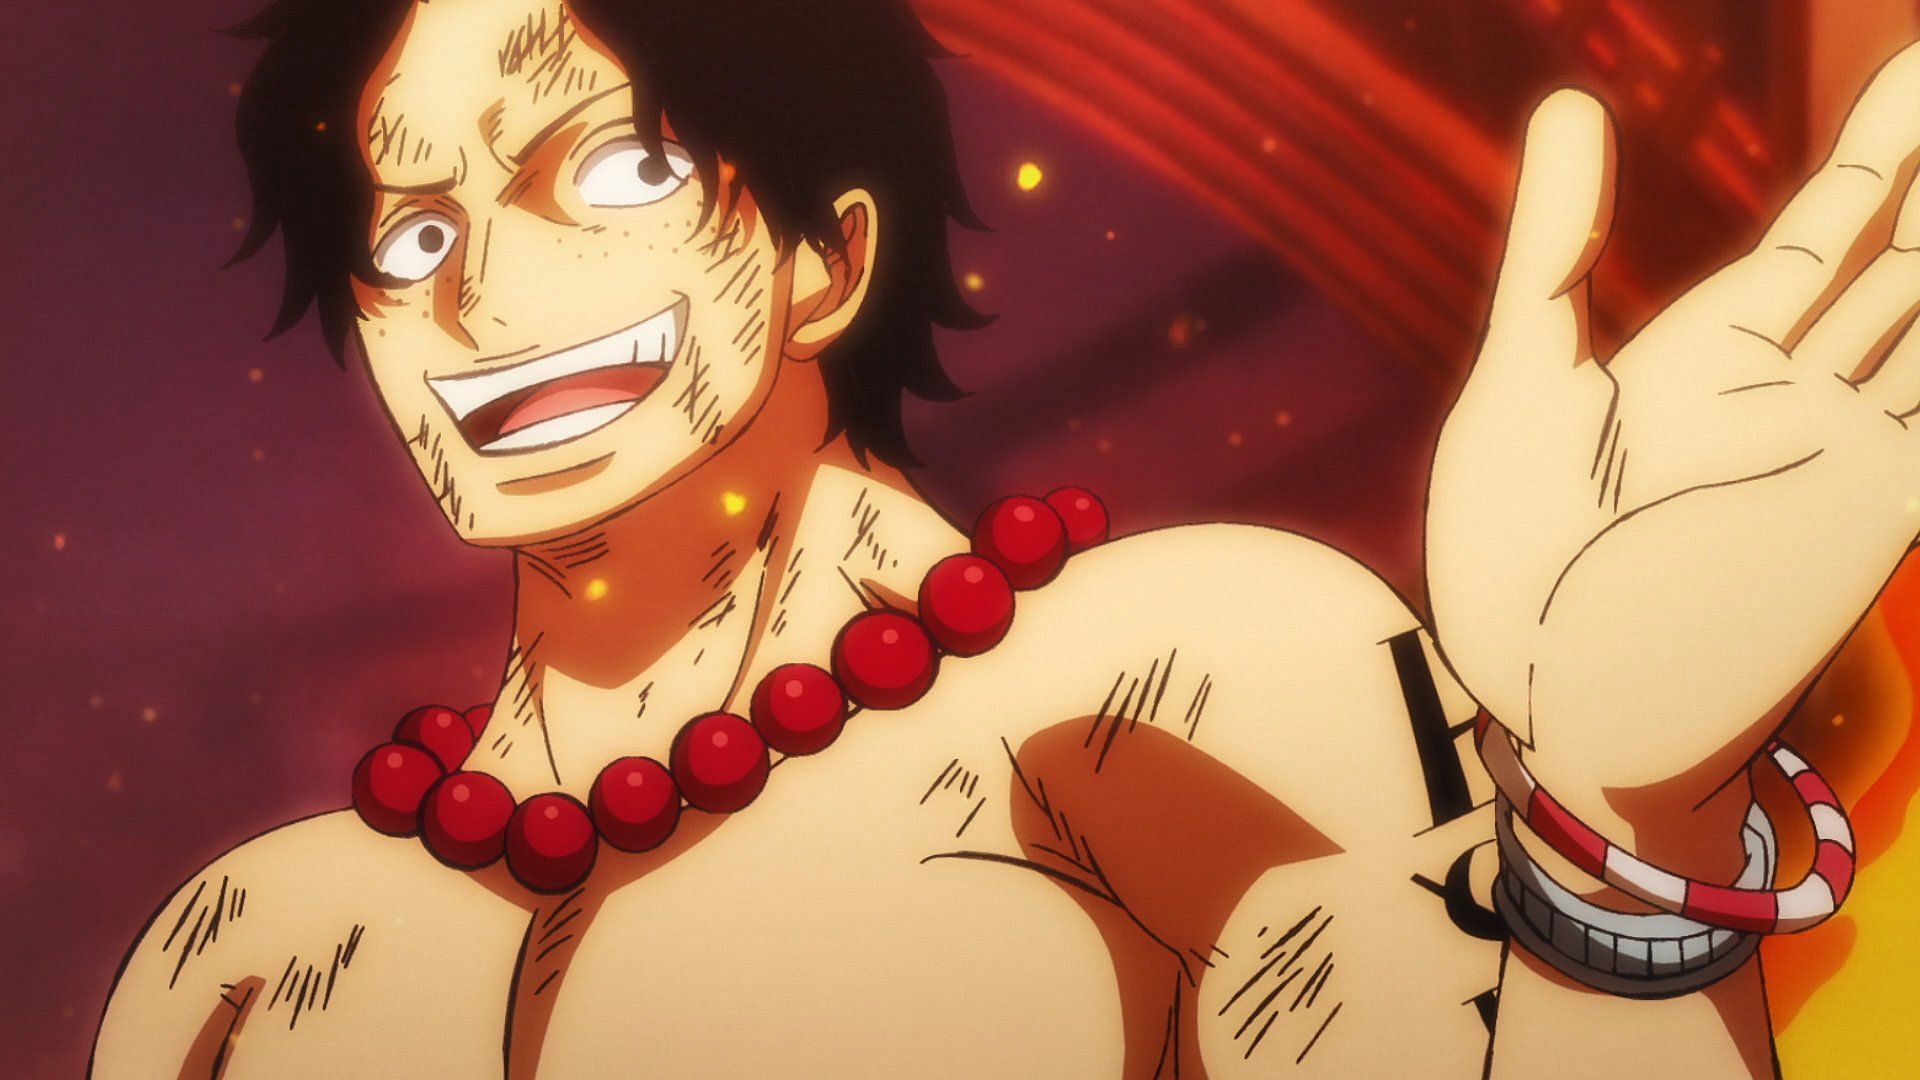 Ace (Image via Toei Animation, One Piece)